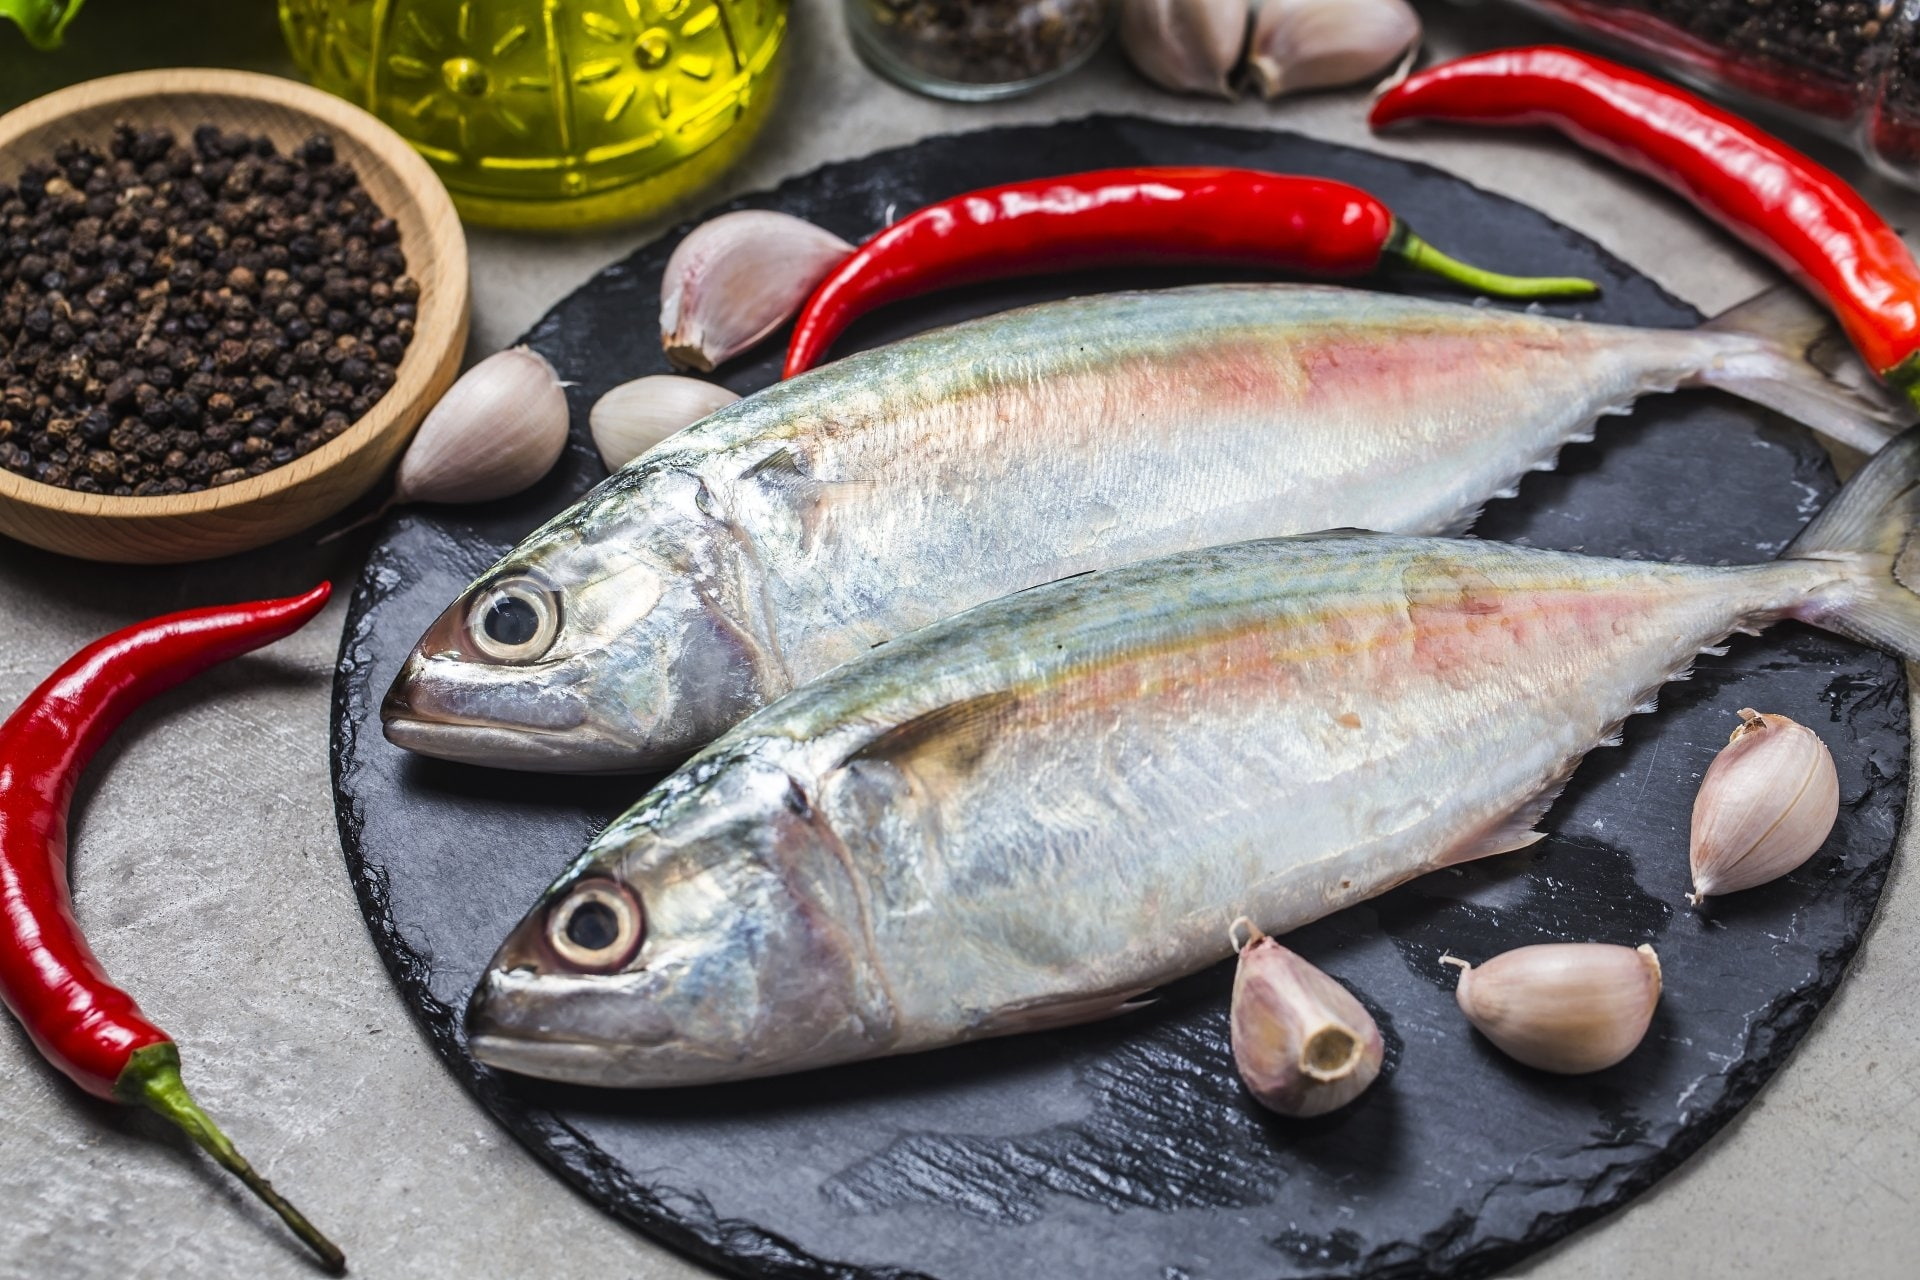 【コラムVol.341】<br>【レシピ】海の幸が美味しい季節!<br>旬の魚介を使用したお料理